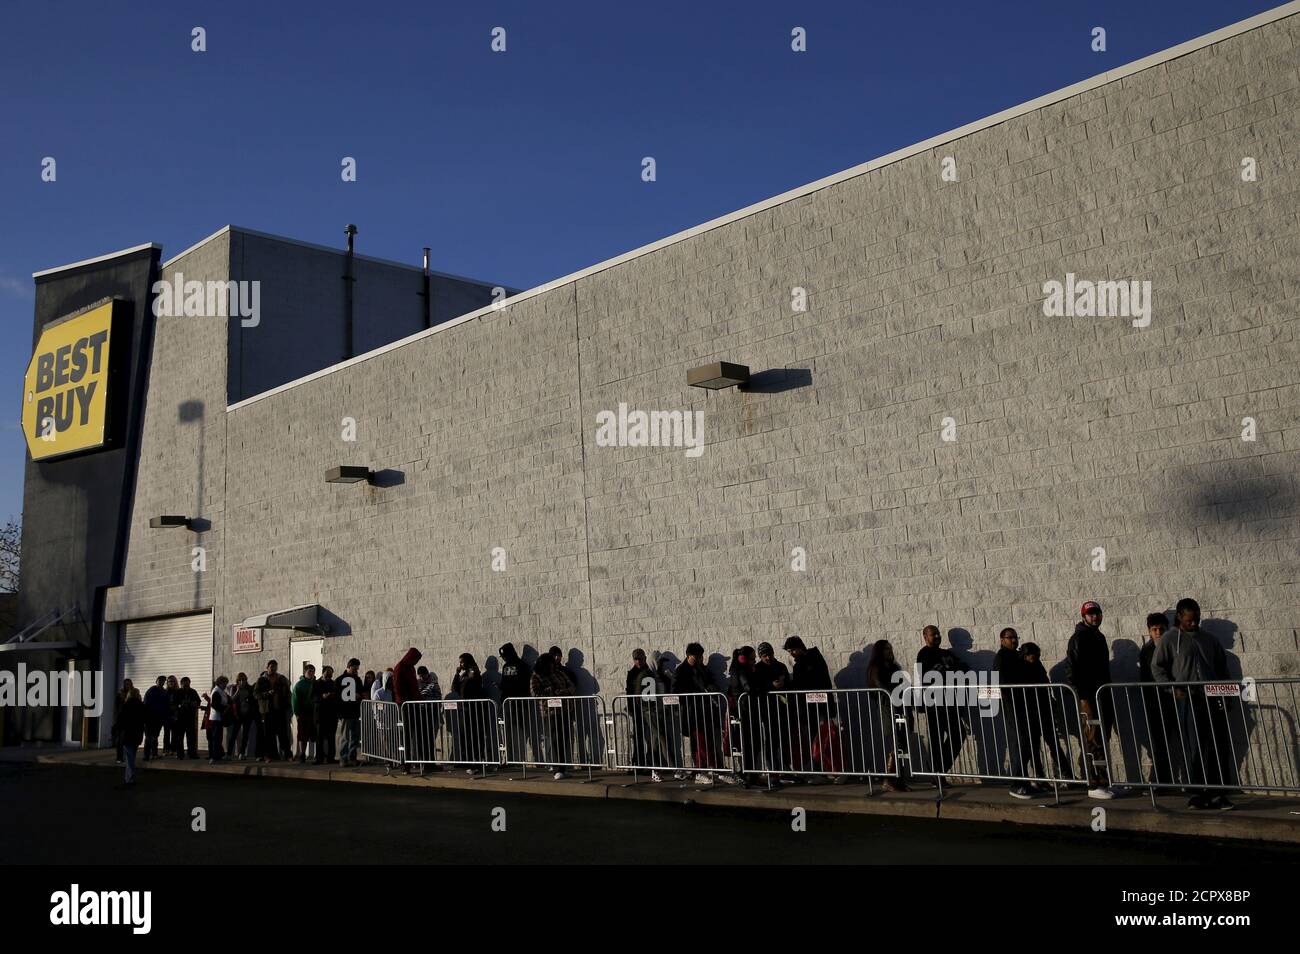 Die Leute warten in der Schlange, um einen Best Buy Store in Westbury, New York 27. November 2015 zu betreten. In den frühen Morgenstunden des Freitags waren die Massen in US-Geschäften und Einkaufszentren dünn, erste Stichproben zeigten, als die Käufer auf die Rabatte am frühen Black Friday mit einer Mischung aus Enthusiasmus und Vorsicht reagierten. REUTERS/Shannon Stapleton Stockfoto